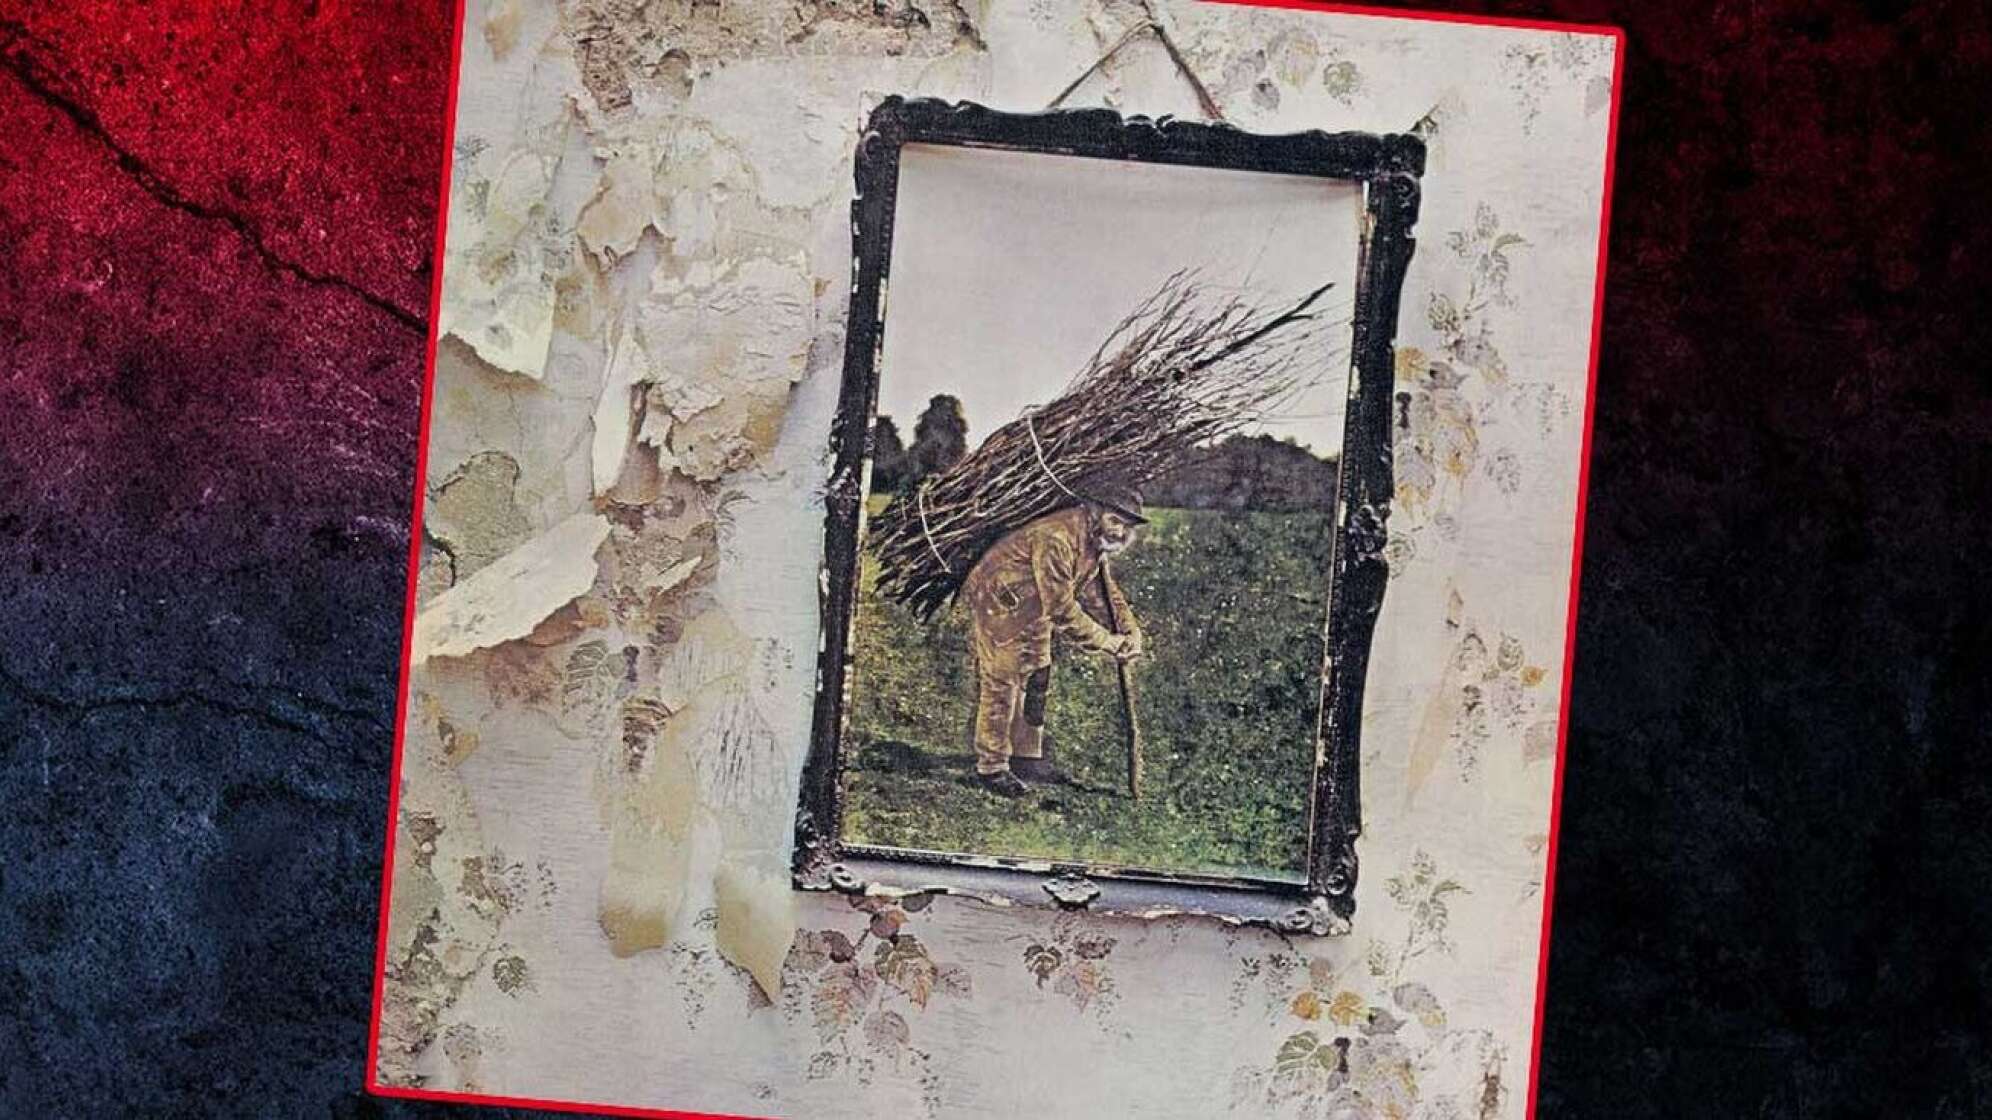 Album-Cover Led Zeppelin